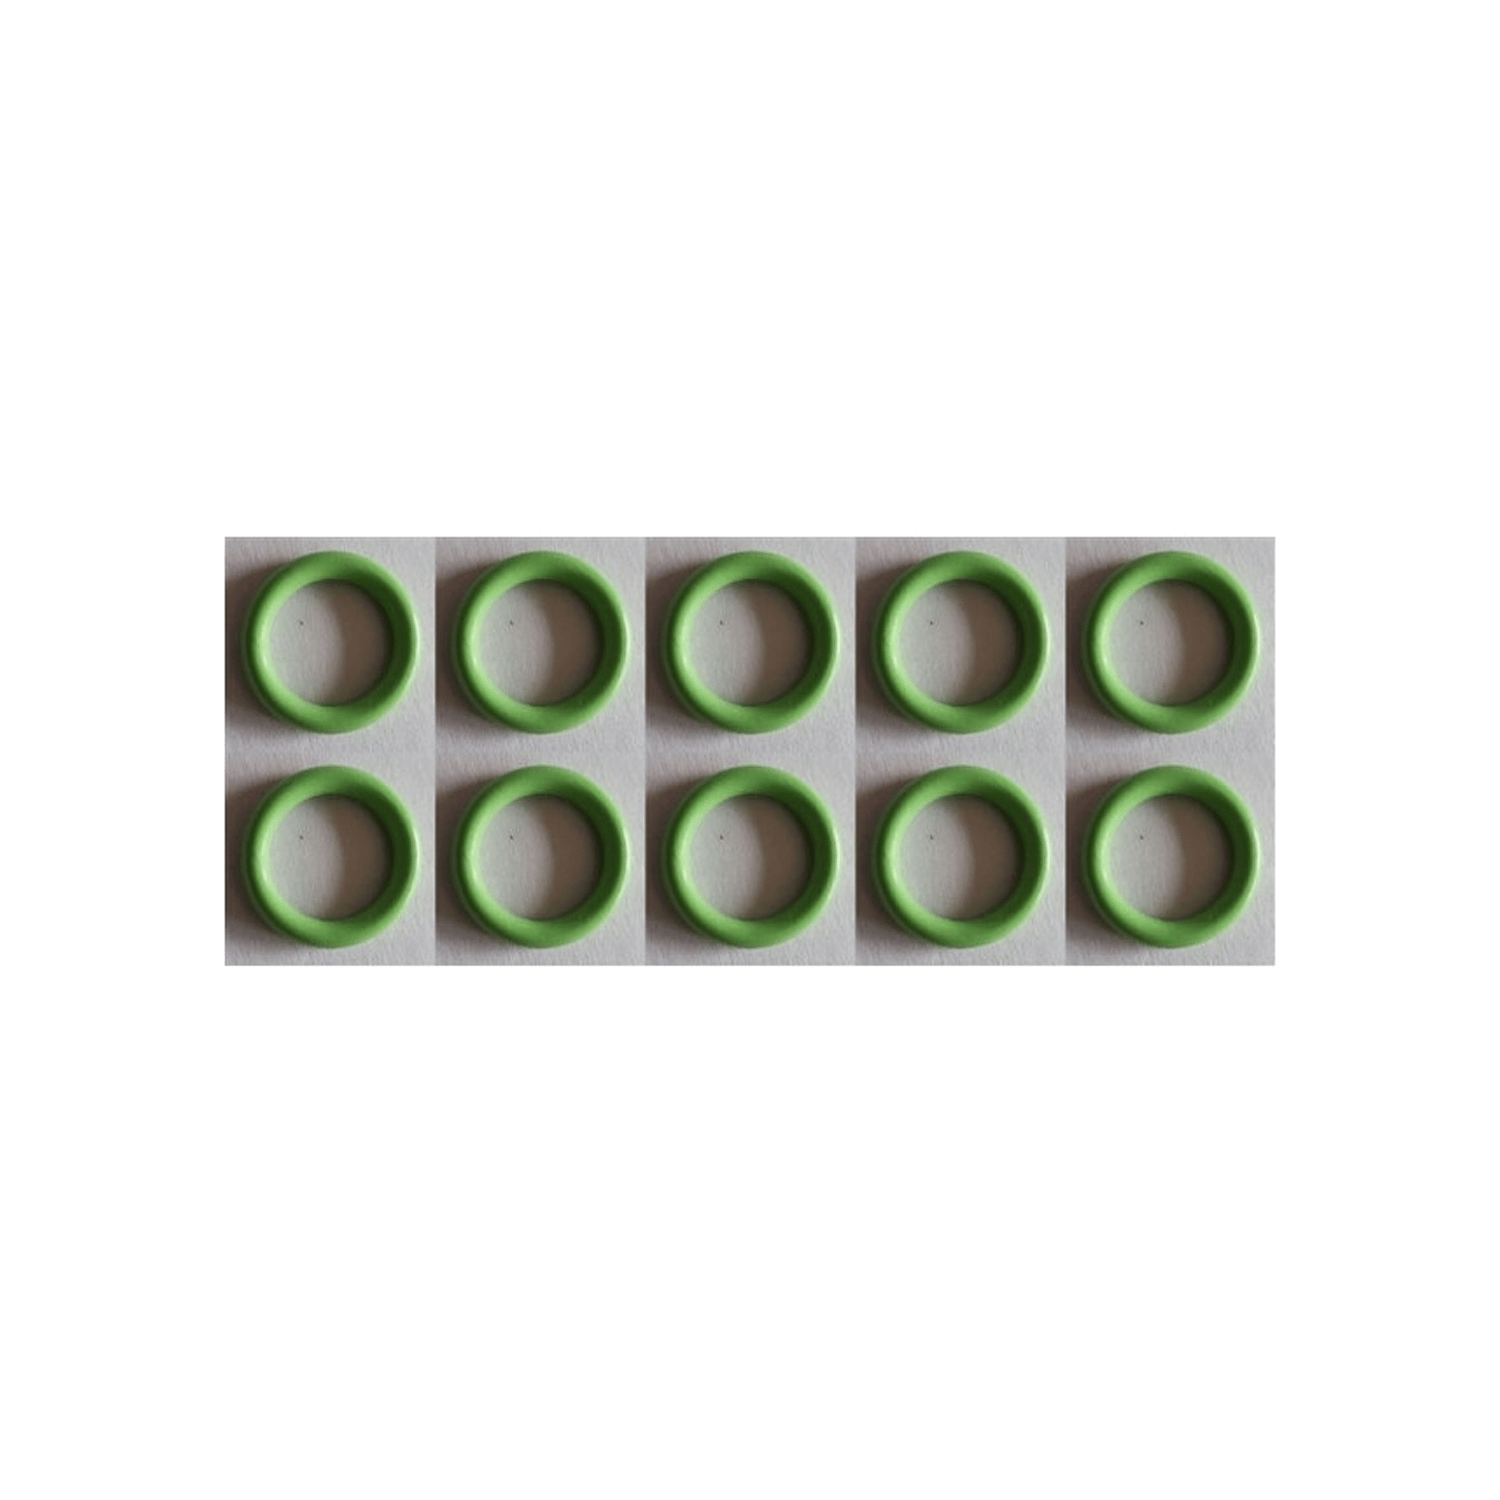 O-ringi 10 x 2 mm 1 szt. z gumy HNBR, do klimatyzatorów R12 i R134a